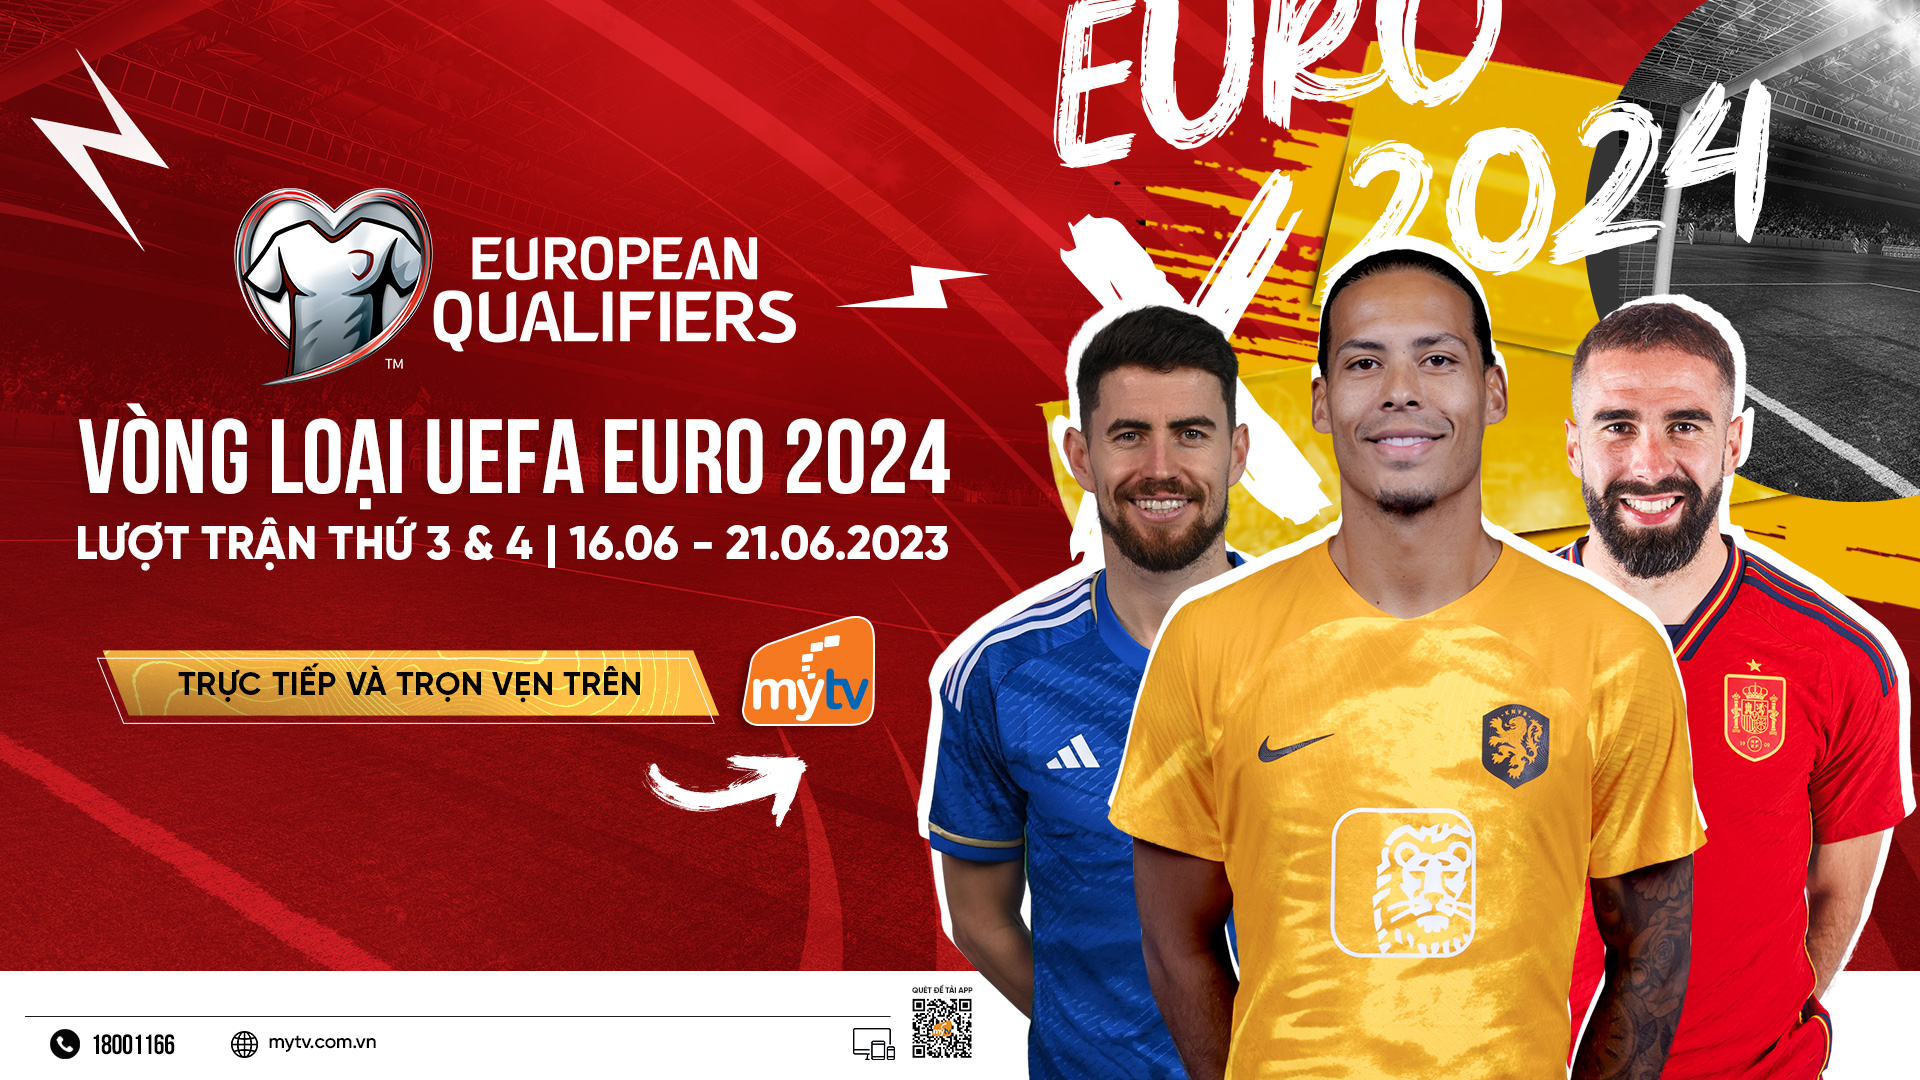 Lượt trận 3 & 4 vòng loại UEFA Euro 2024 đang là tâm điểm thể thao hot toàn cầu